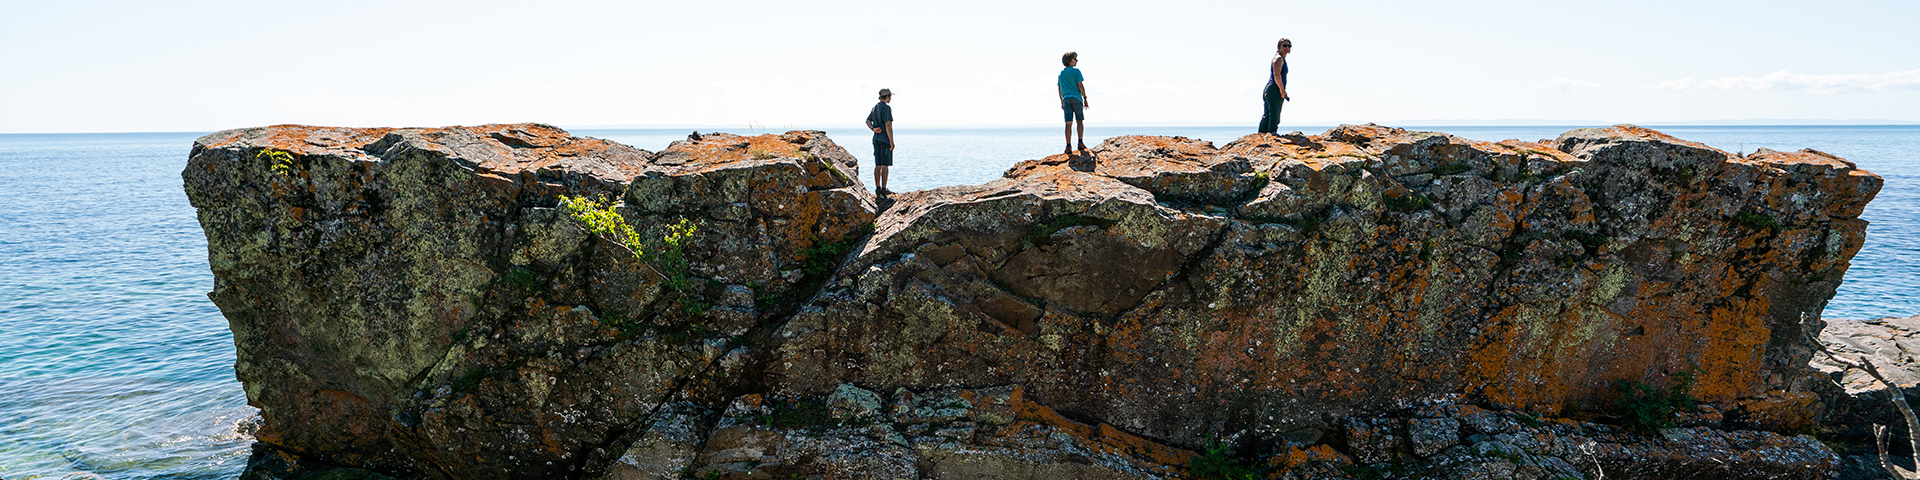 Trois personnes debout sur un gros rocher.